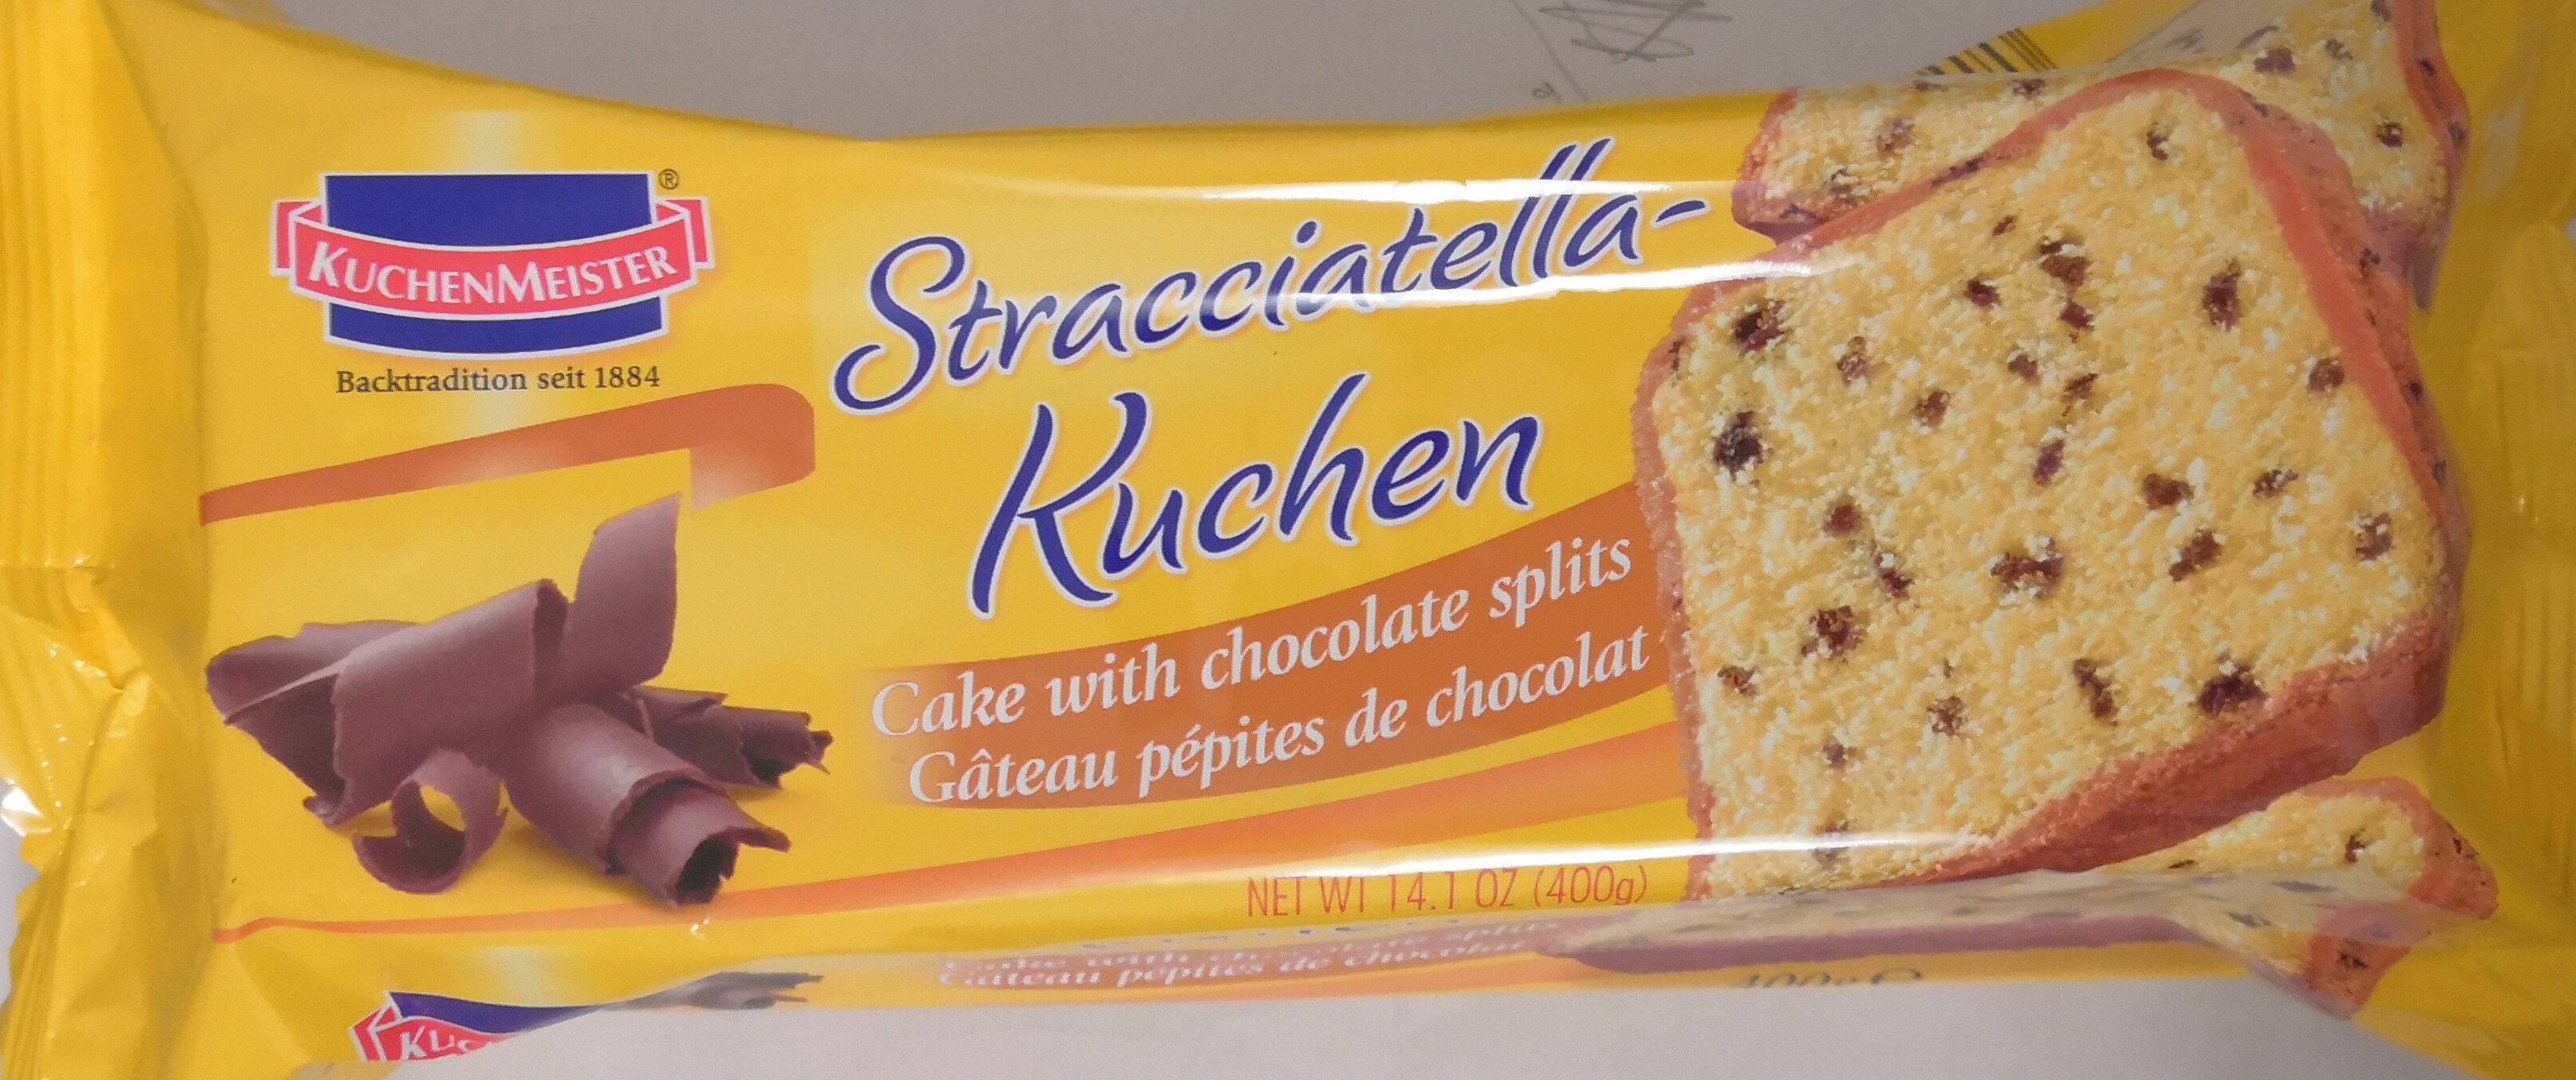 Stracciatella-kuchen - Produkt